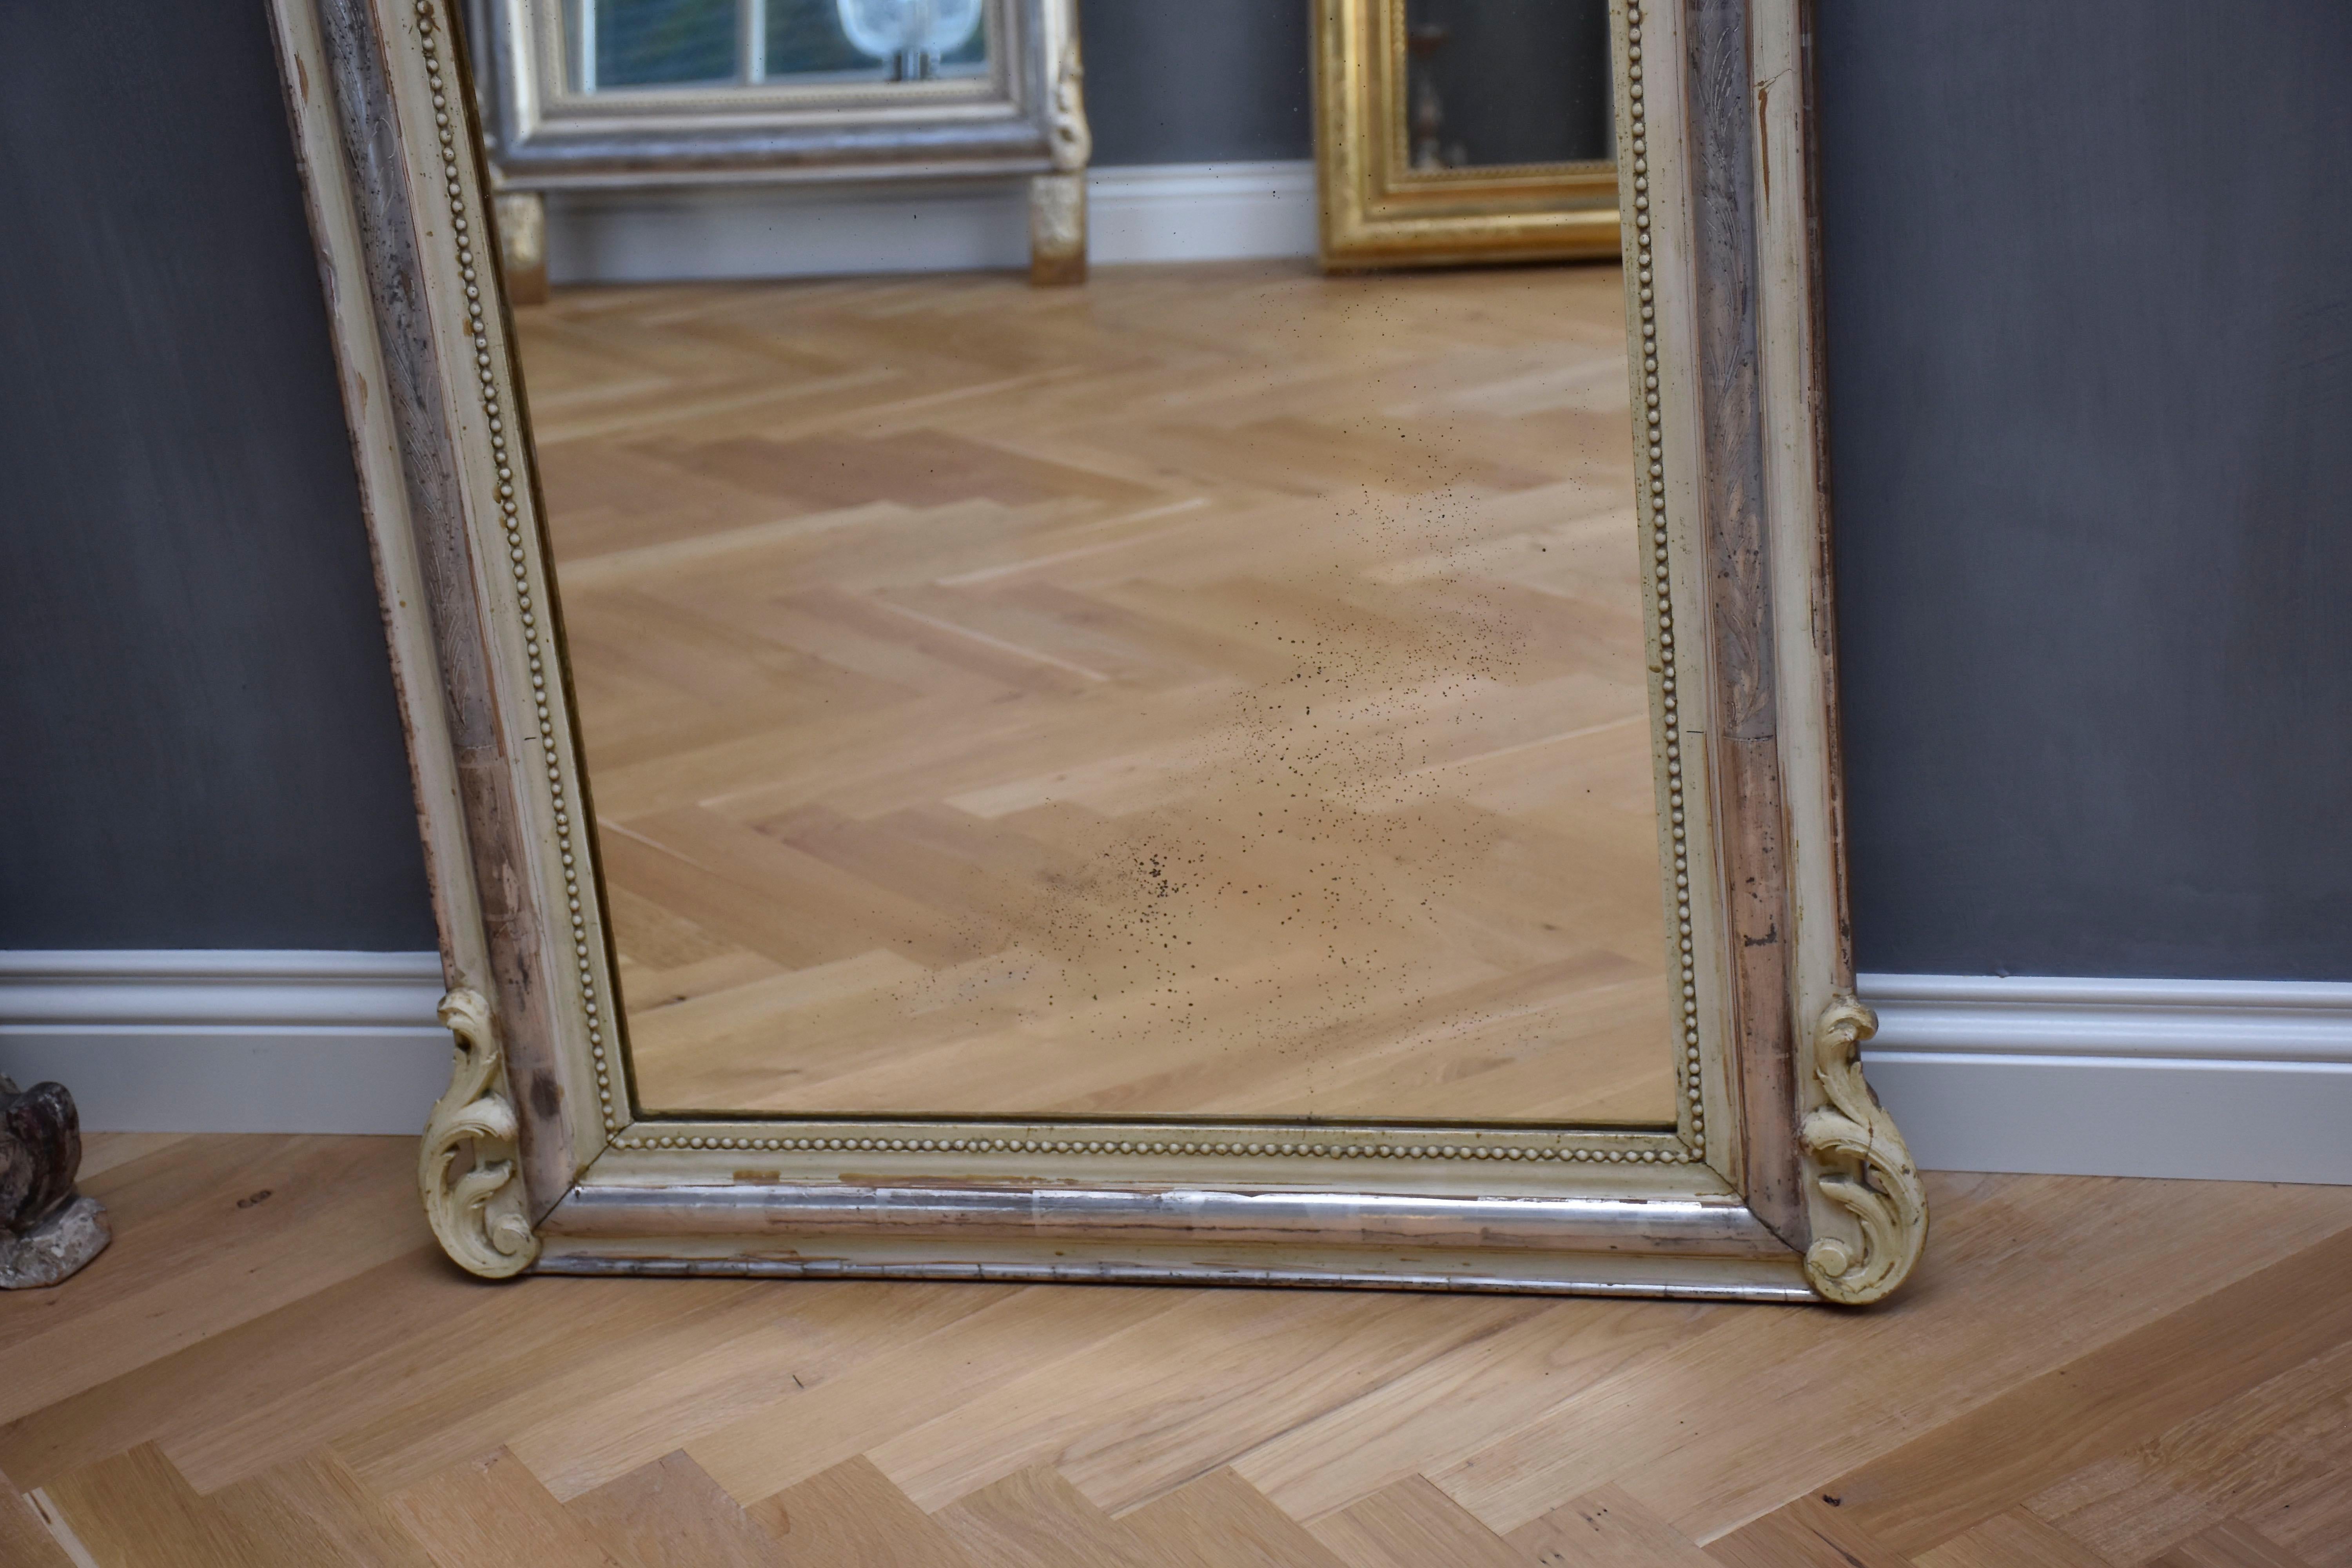 Très joli miroir français du 19ème siècle avec sa vitre antique d'origine, légèrement roussie, et un bel écusson ajouré.
Le cadre présente une dorure à la feuille d'argent d'origine, est gravé de feuilles et a un bord perlé.
Sous un coin, des